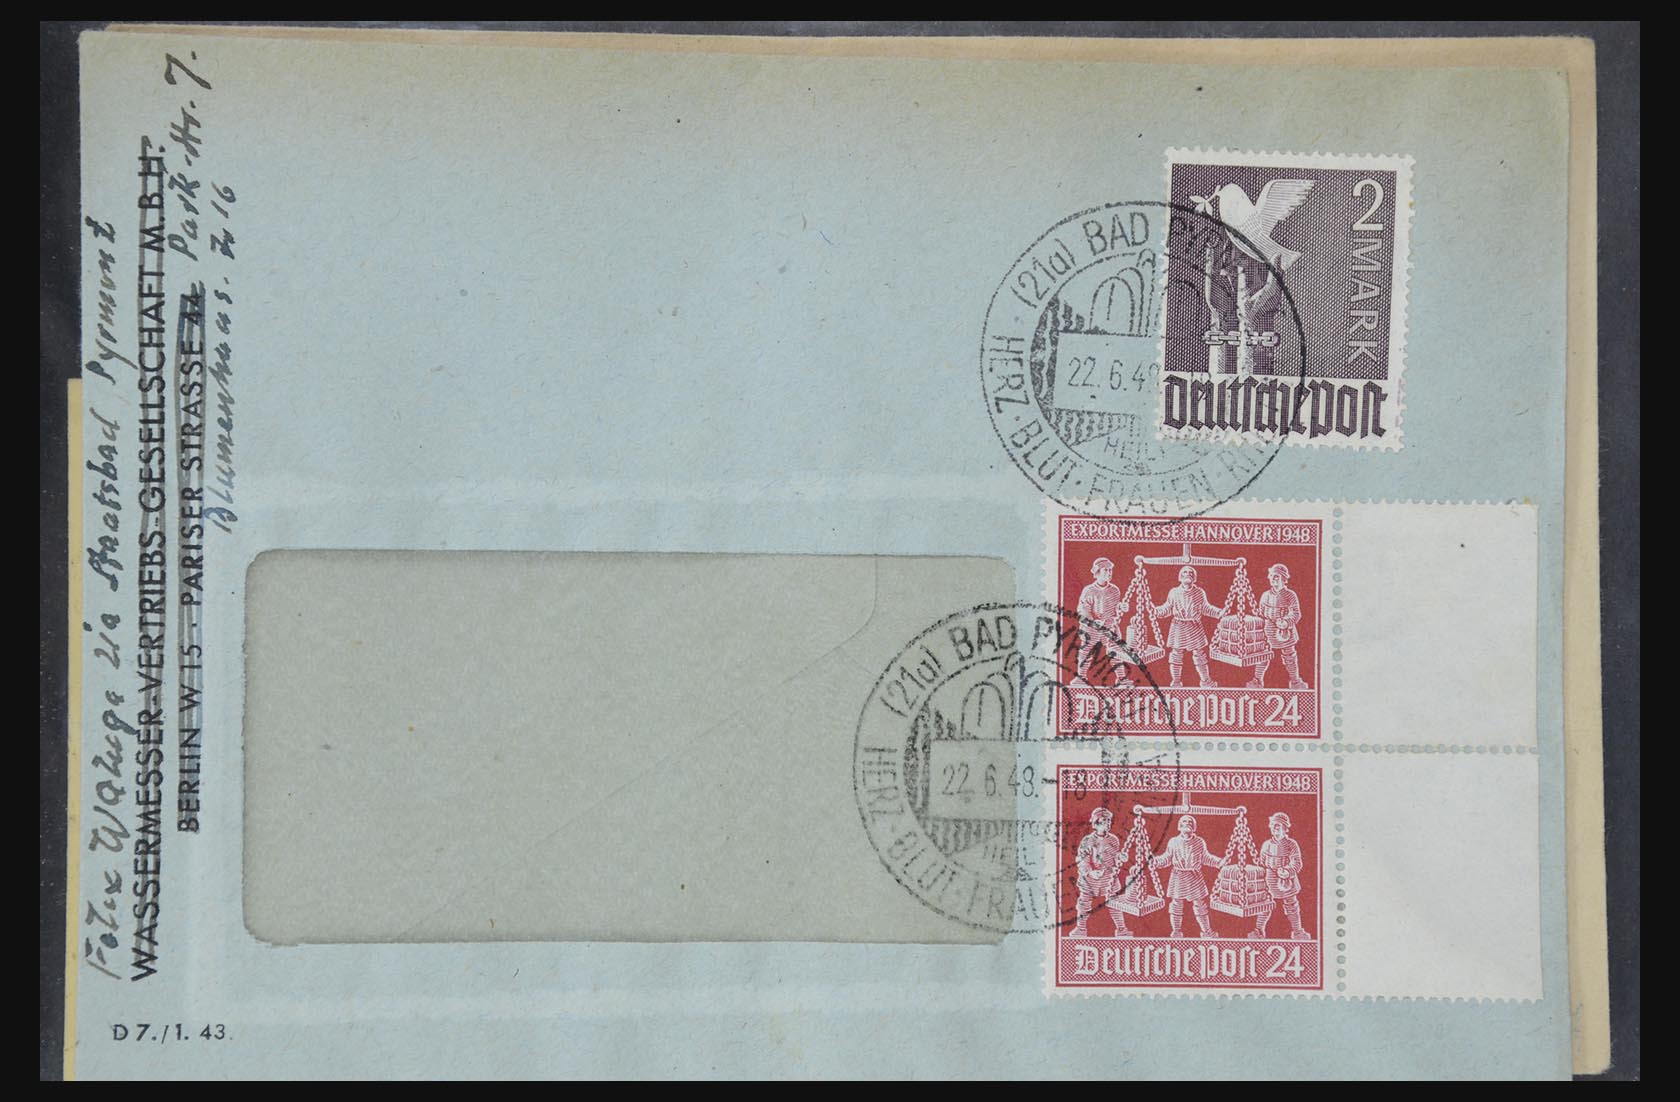 31581 015 - 31581 Duitsland brieven en FDC's 1945-1981.